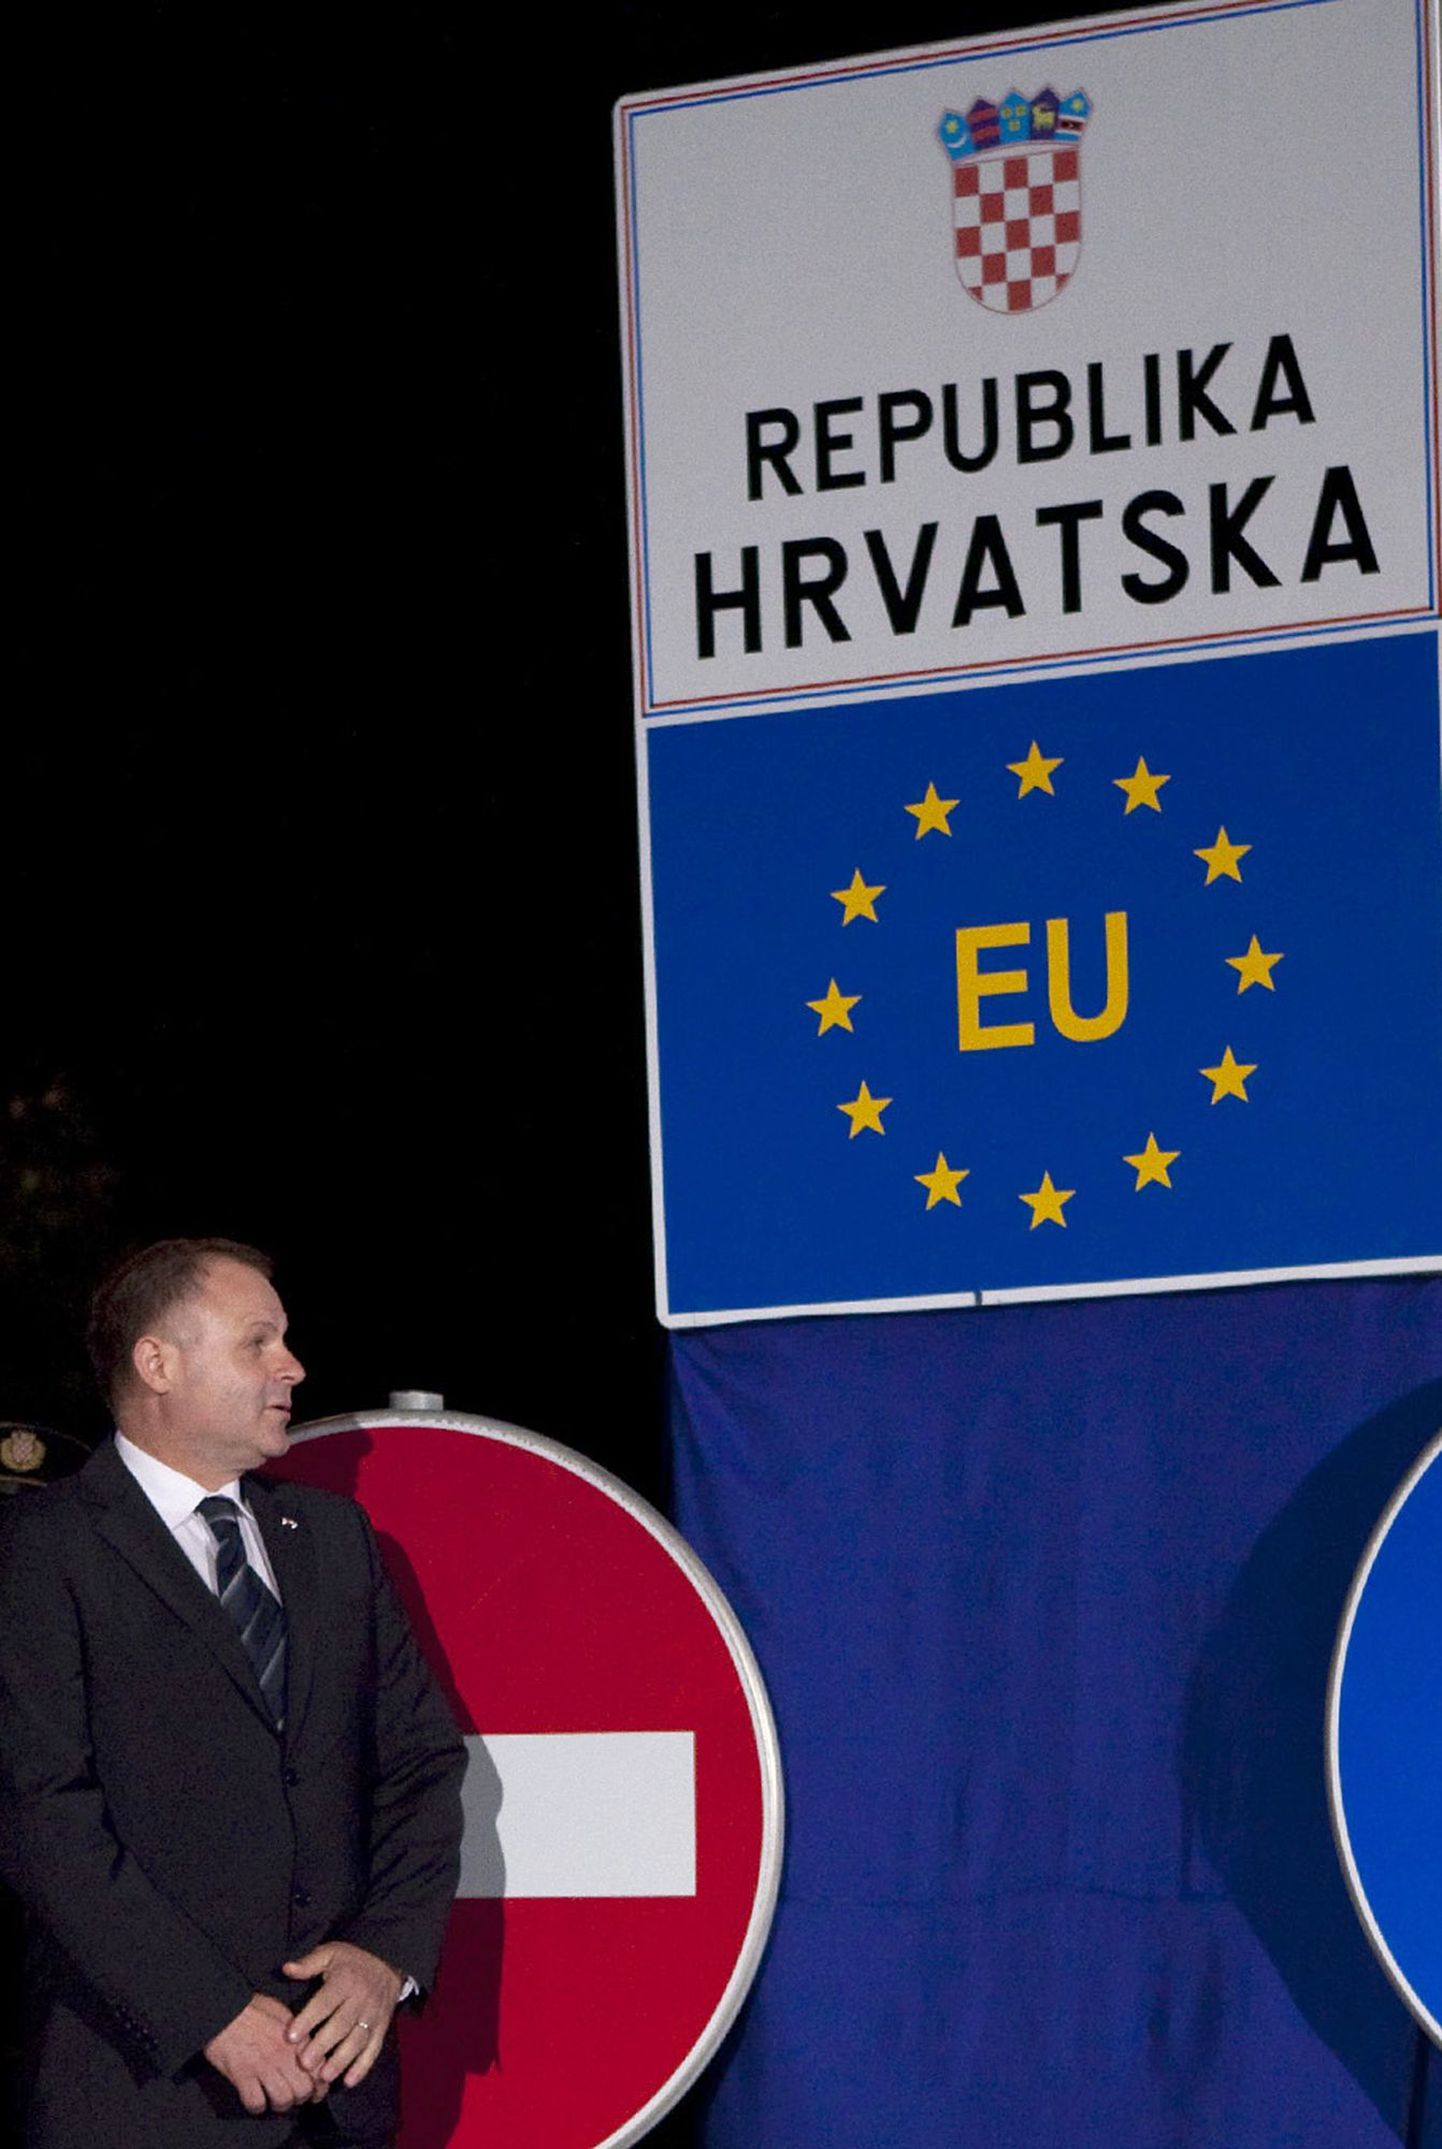 Хорватия стала 28-м членом ЕС